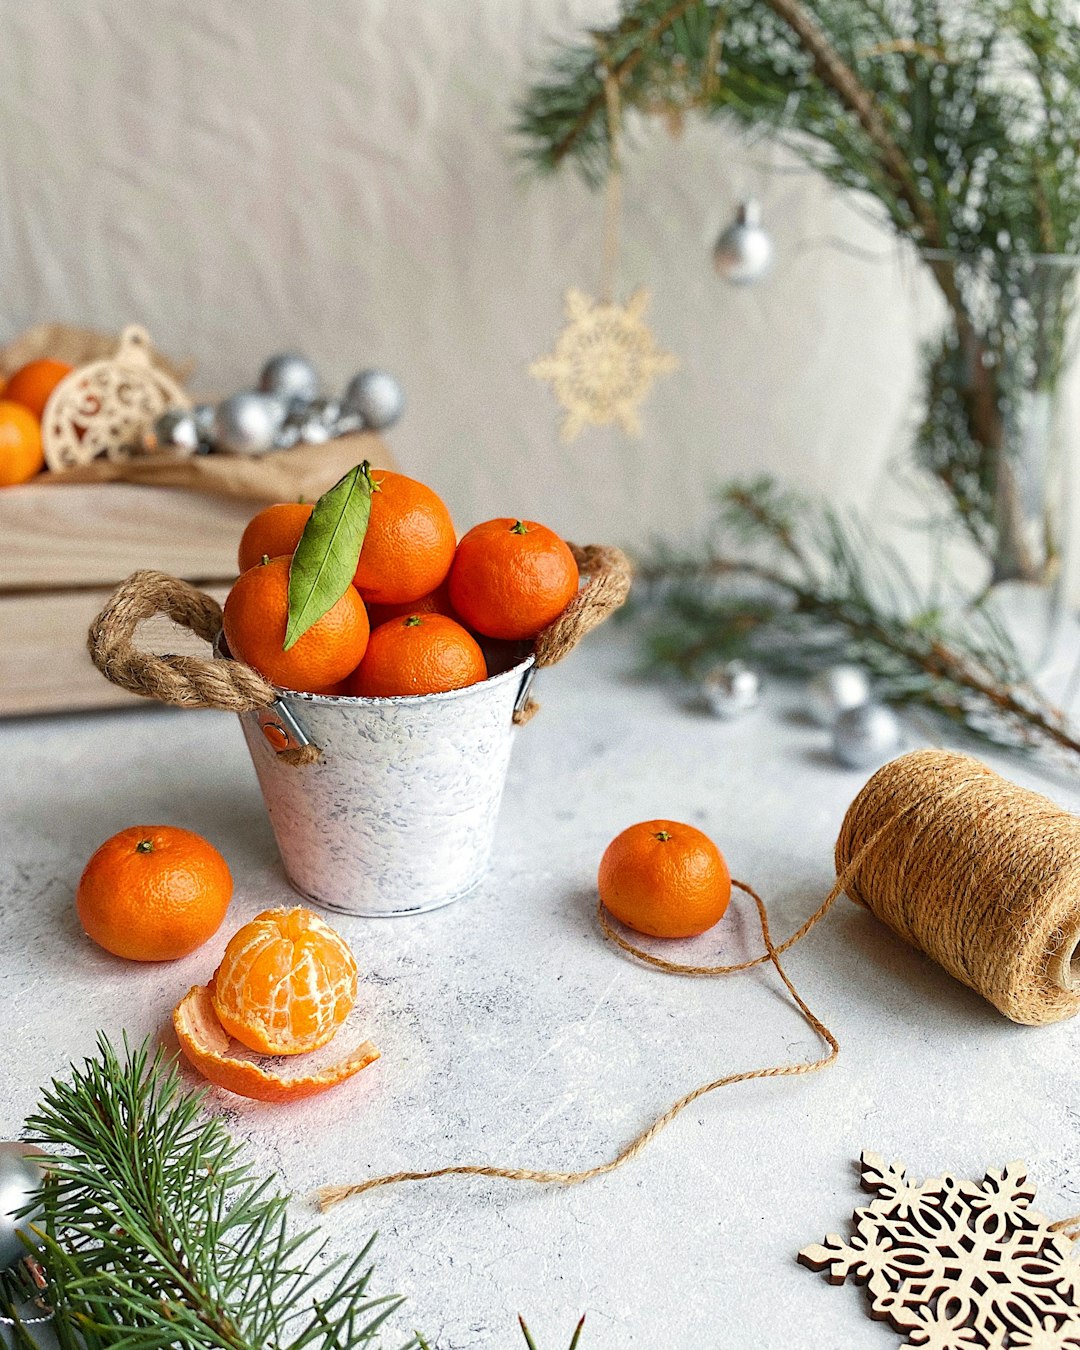 orange fruits in white ceramic bowl